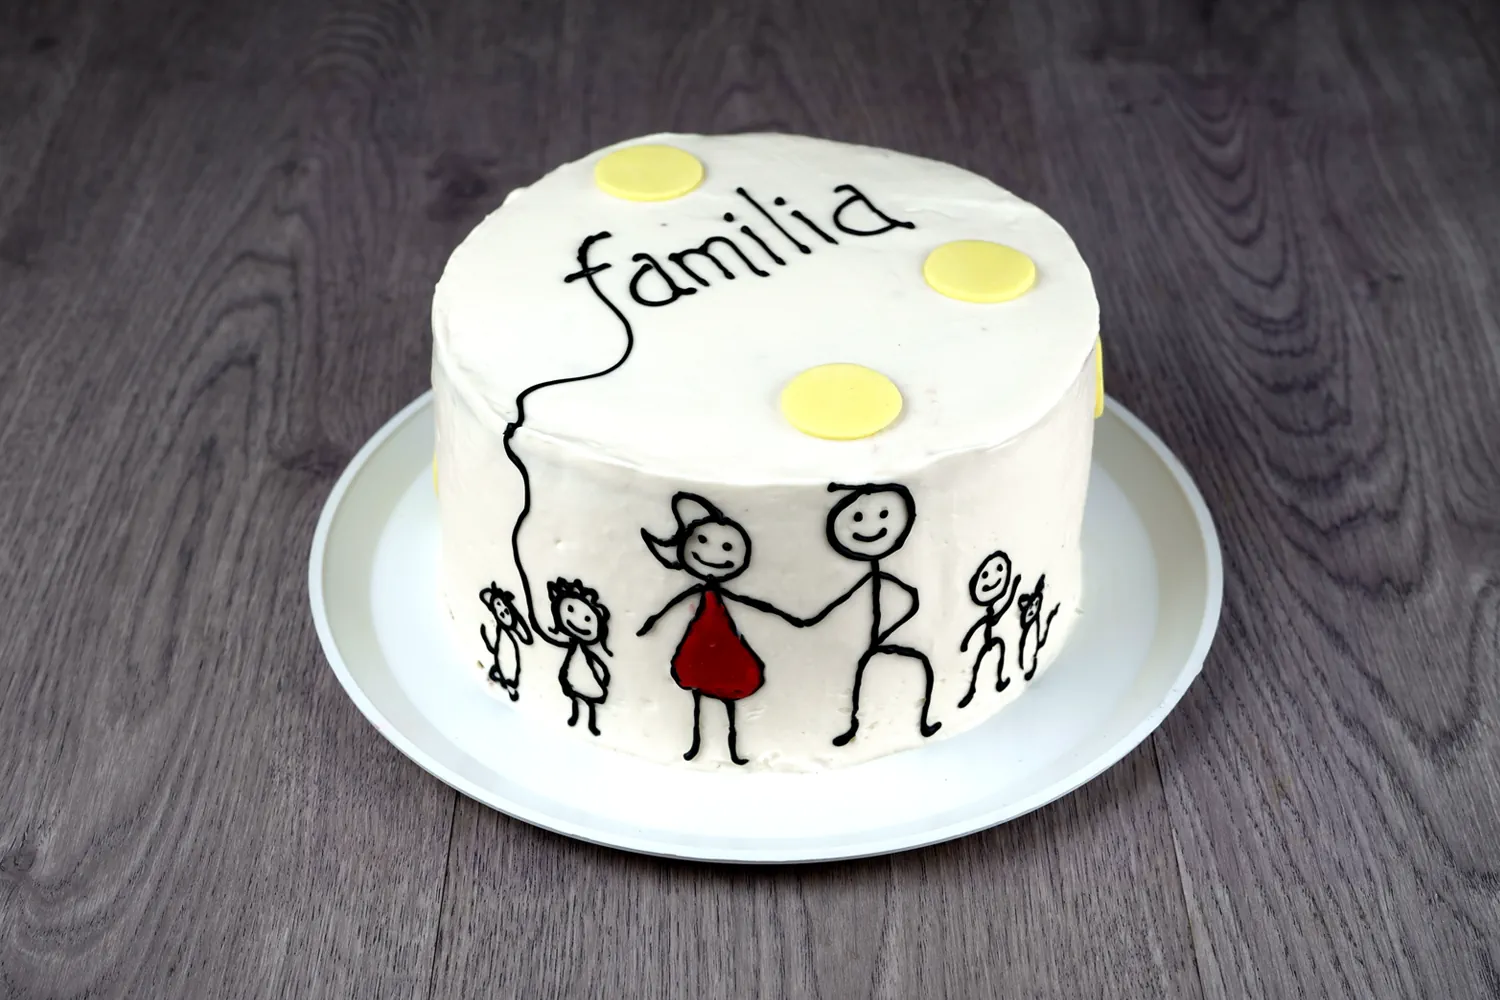 Pastel Temático Día de la Familia – Servicio a domicilio